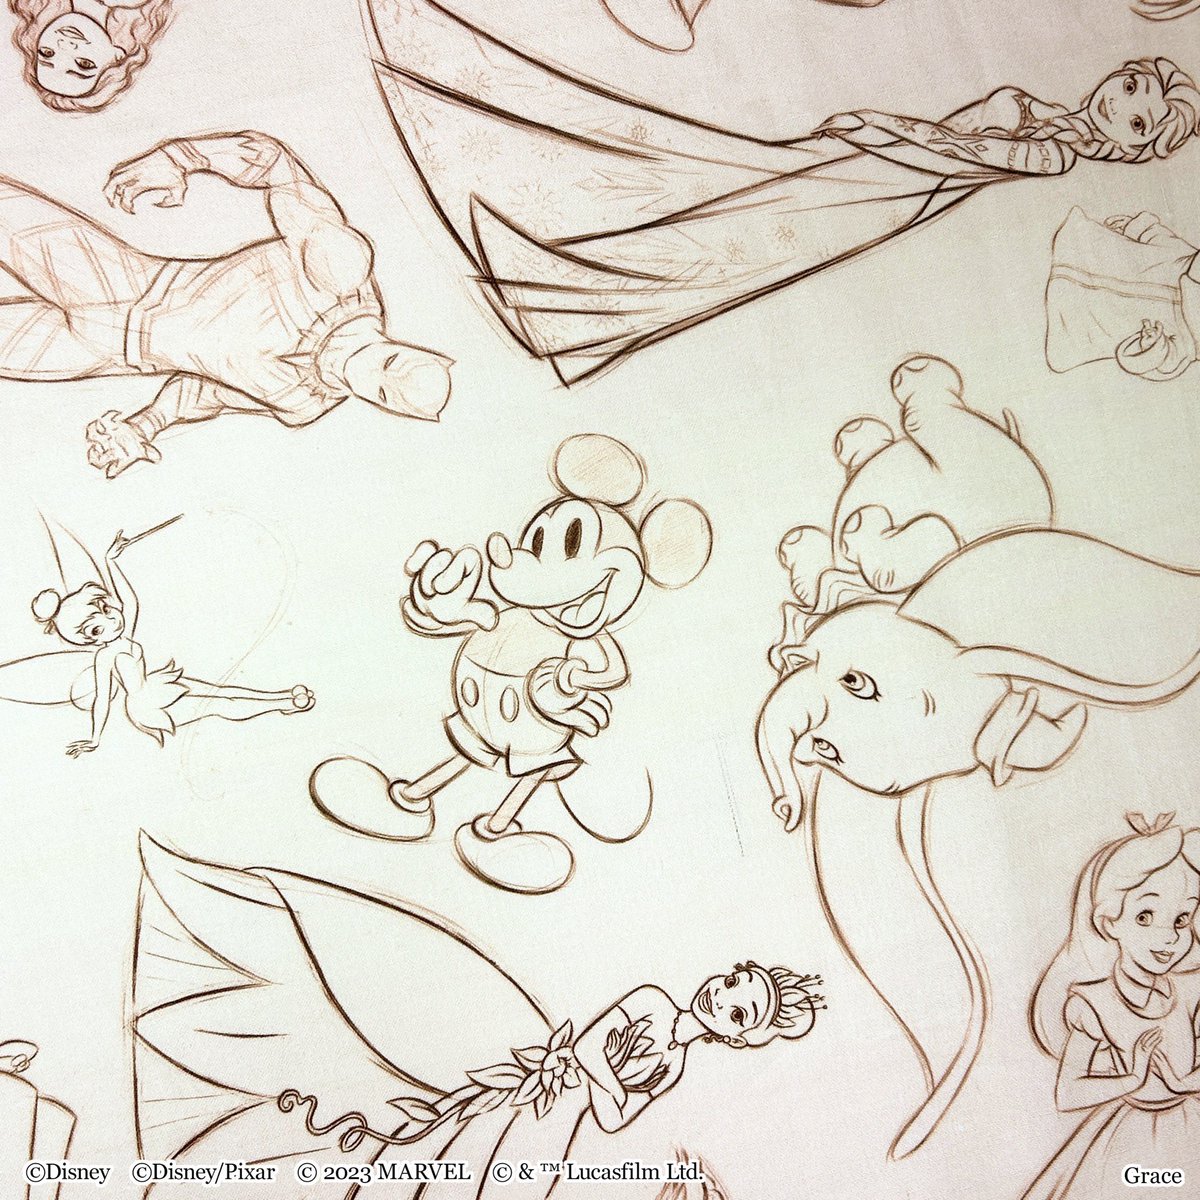 【Disney100/ Scarf】 -Sketch-  色んなディズニーキャラクターが素描風のイラストでレイアウト❗️ 柔らかなピンク系のカラーと合わさり、ぬくもりある優しいデザインです✨  #ディズニー #Disney #ミッキー #アリス #スターウォーズ #スティッチ #ウッディ #ミゲル #ドナルド #ティアナ